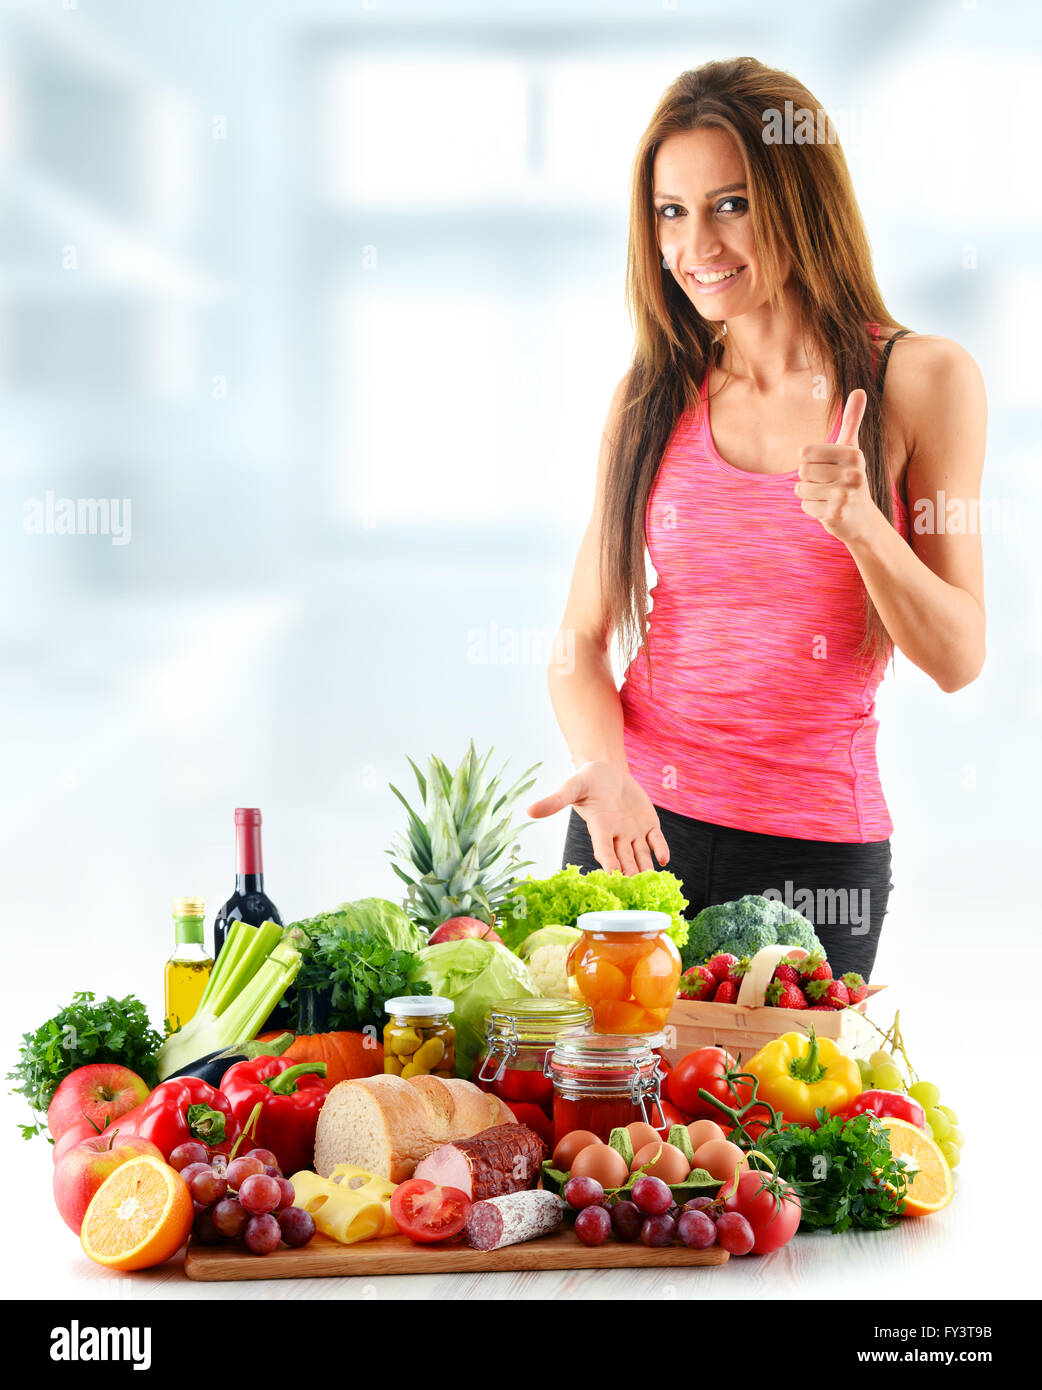 Jeune femme avec un assortiment de produits alimentaires biologiques. Alimentation équilibrée Banque D'Images